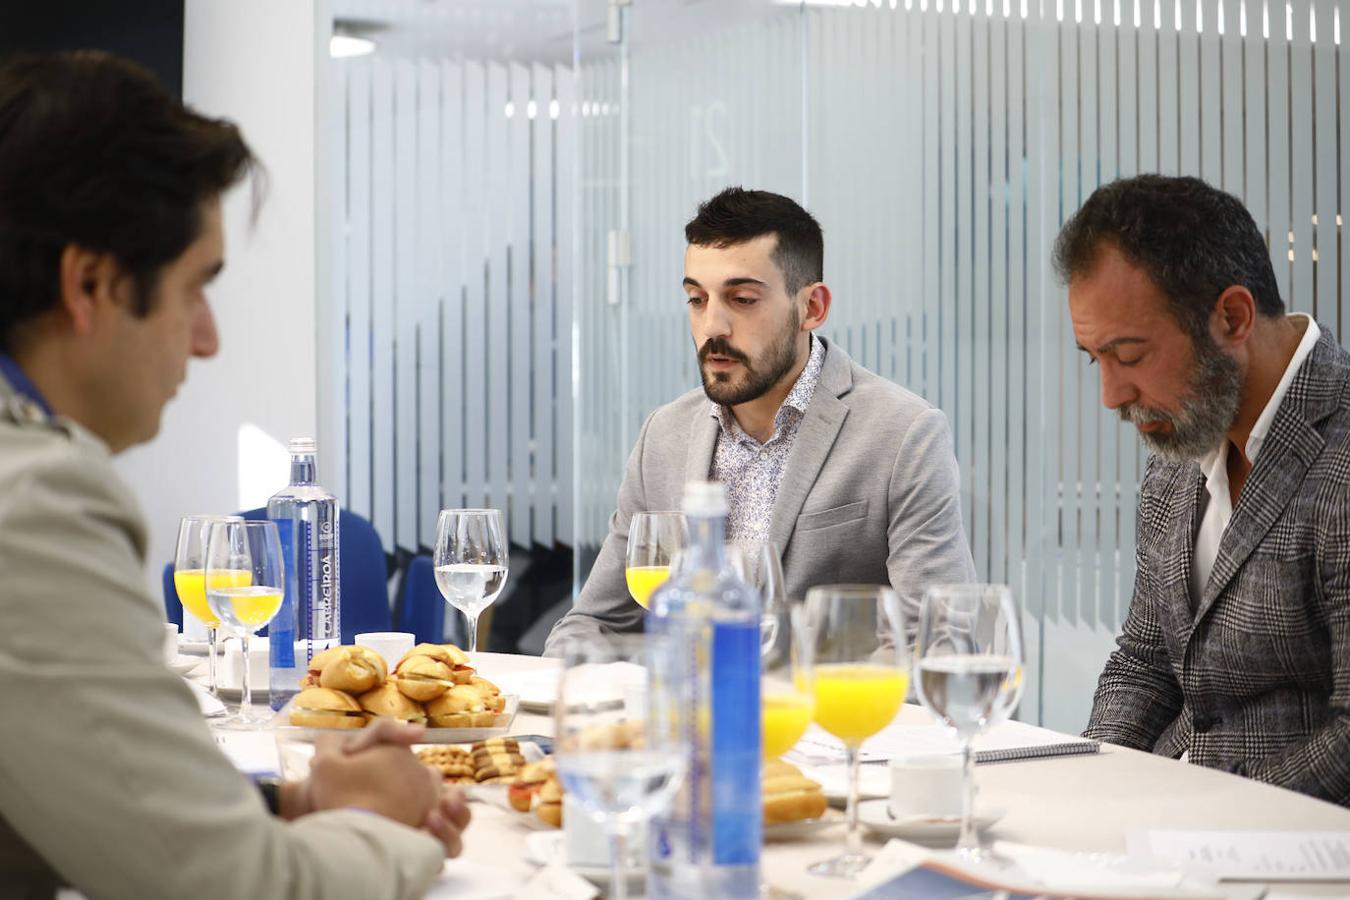 El desayuno informativo sobre la digitalización en Córdoba, en imágenes